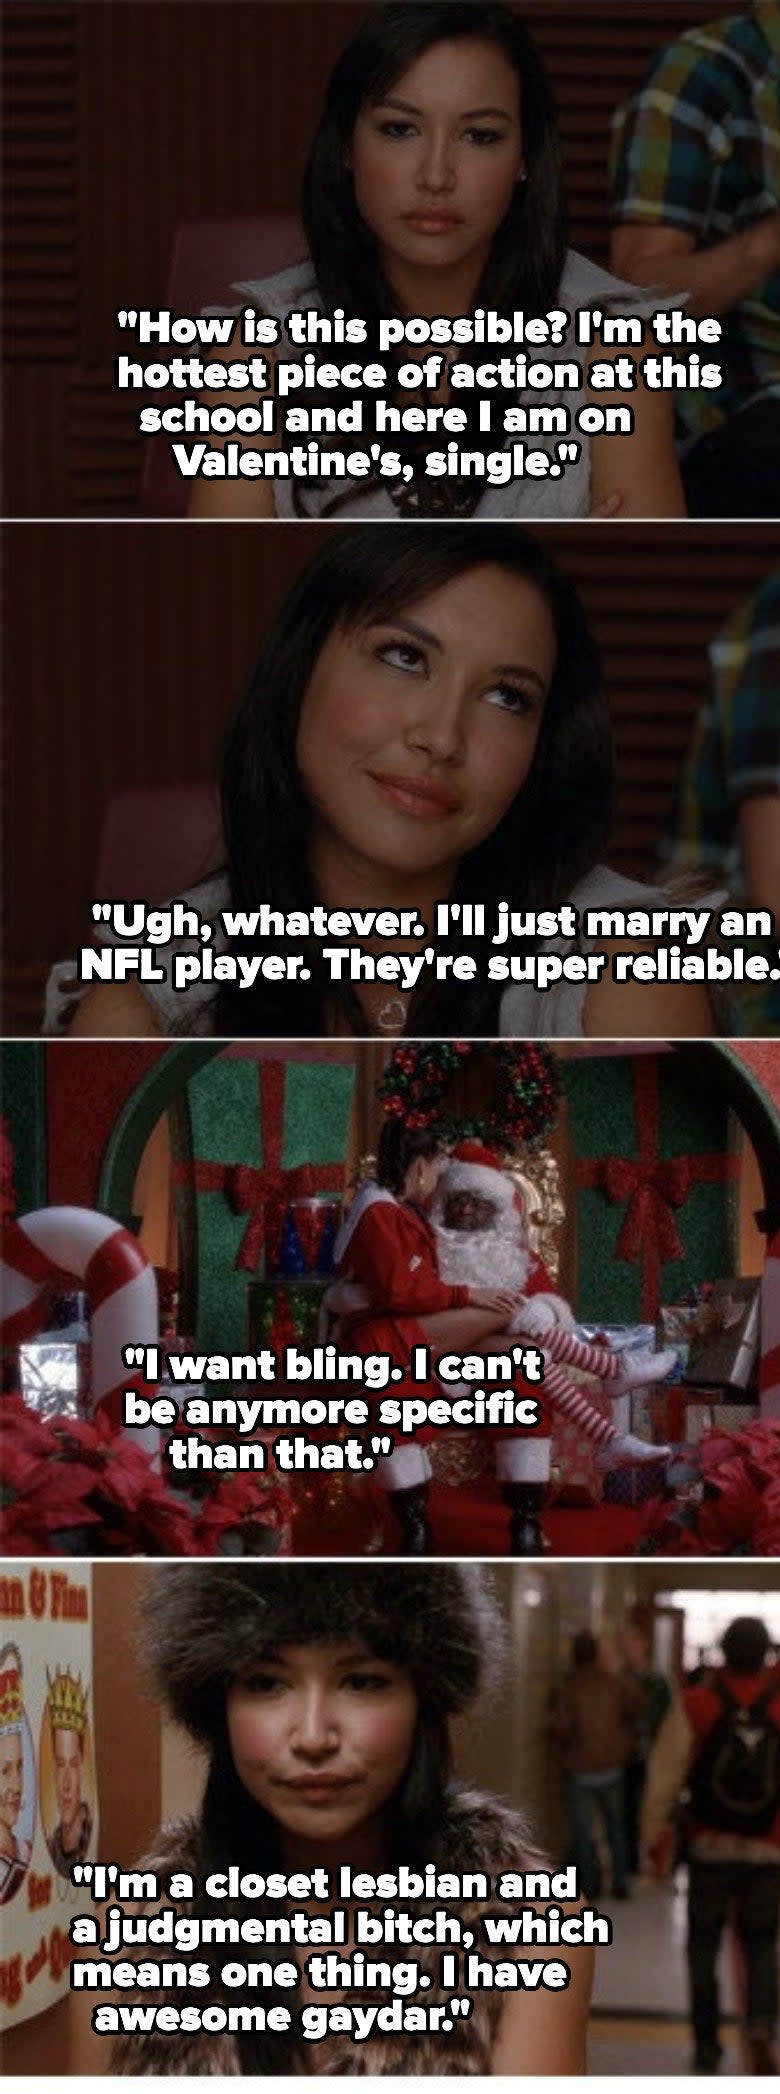 Santana Lopez in "Glee"